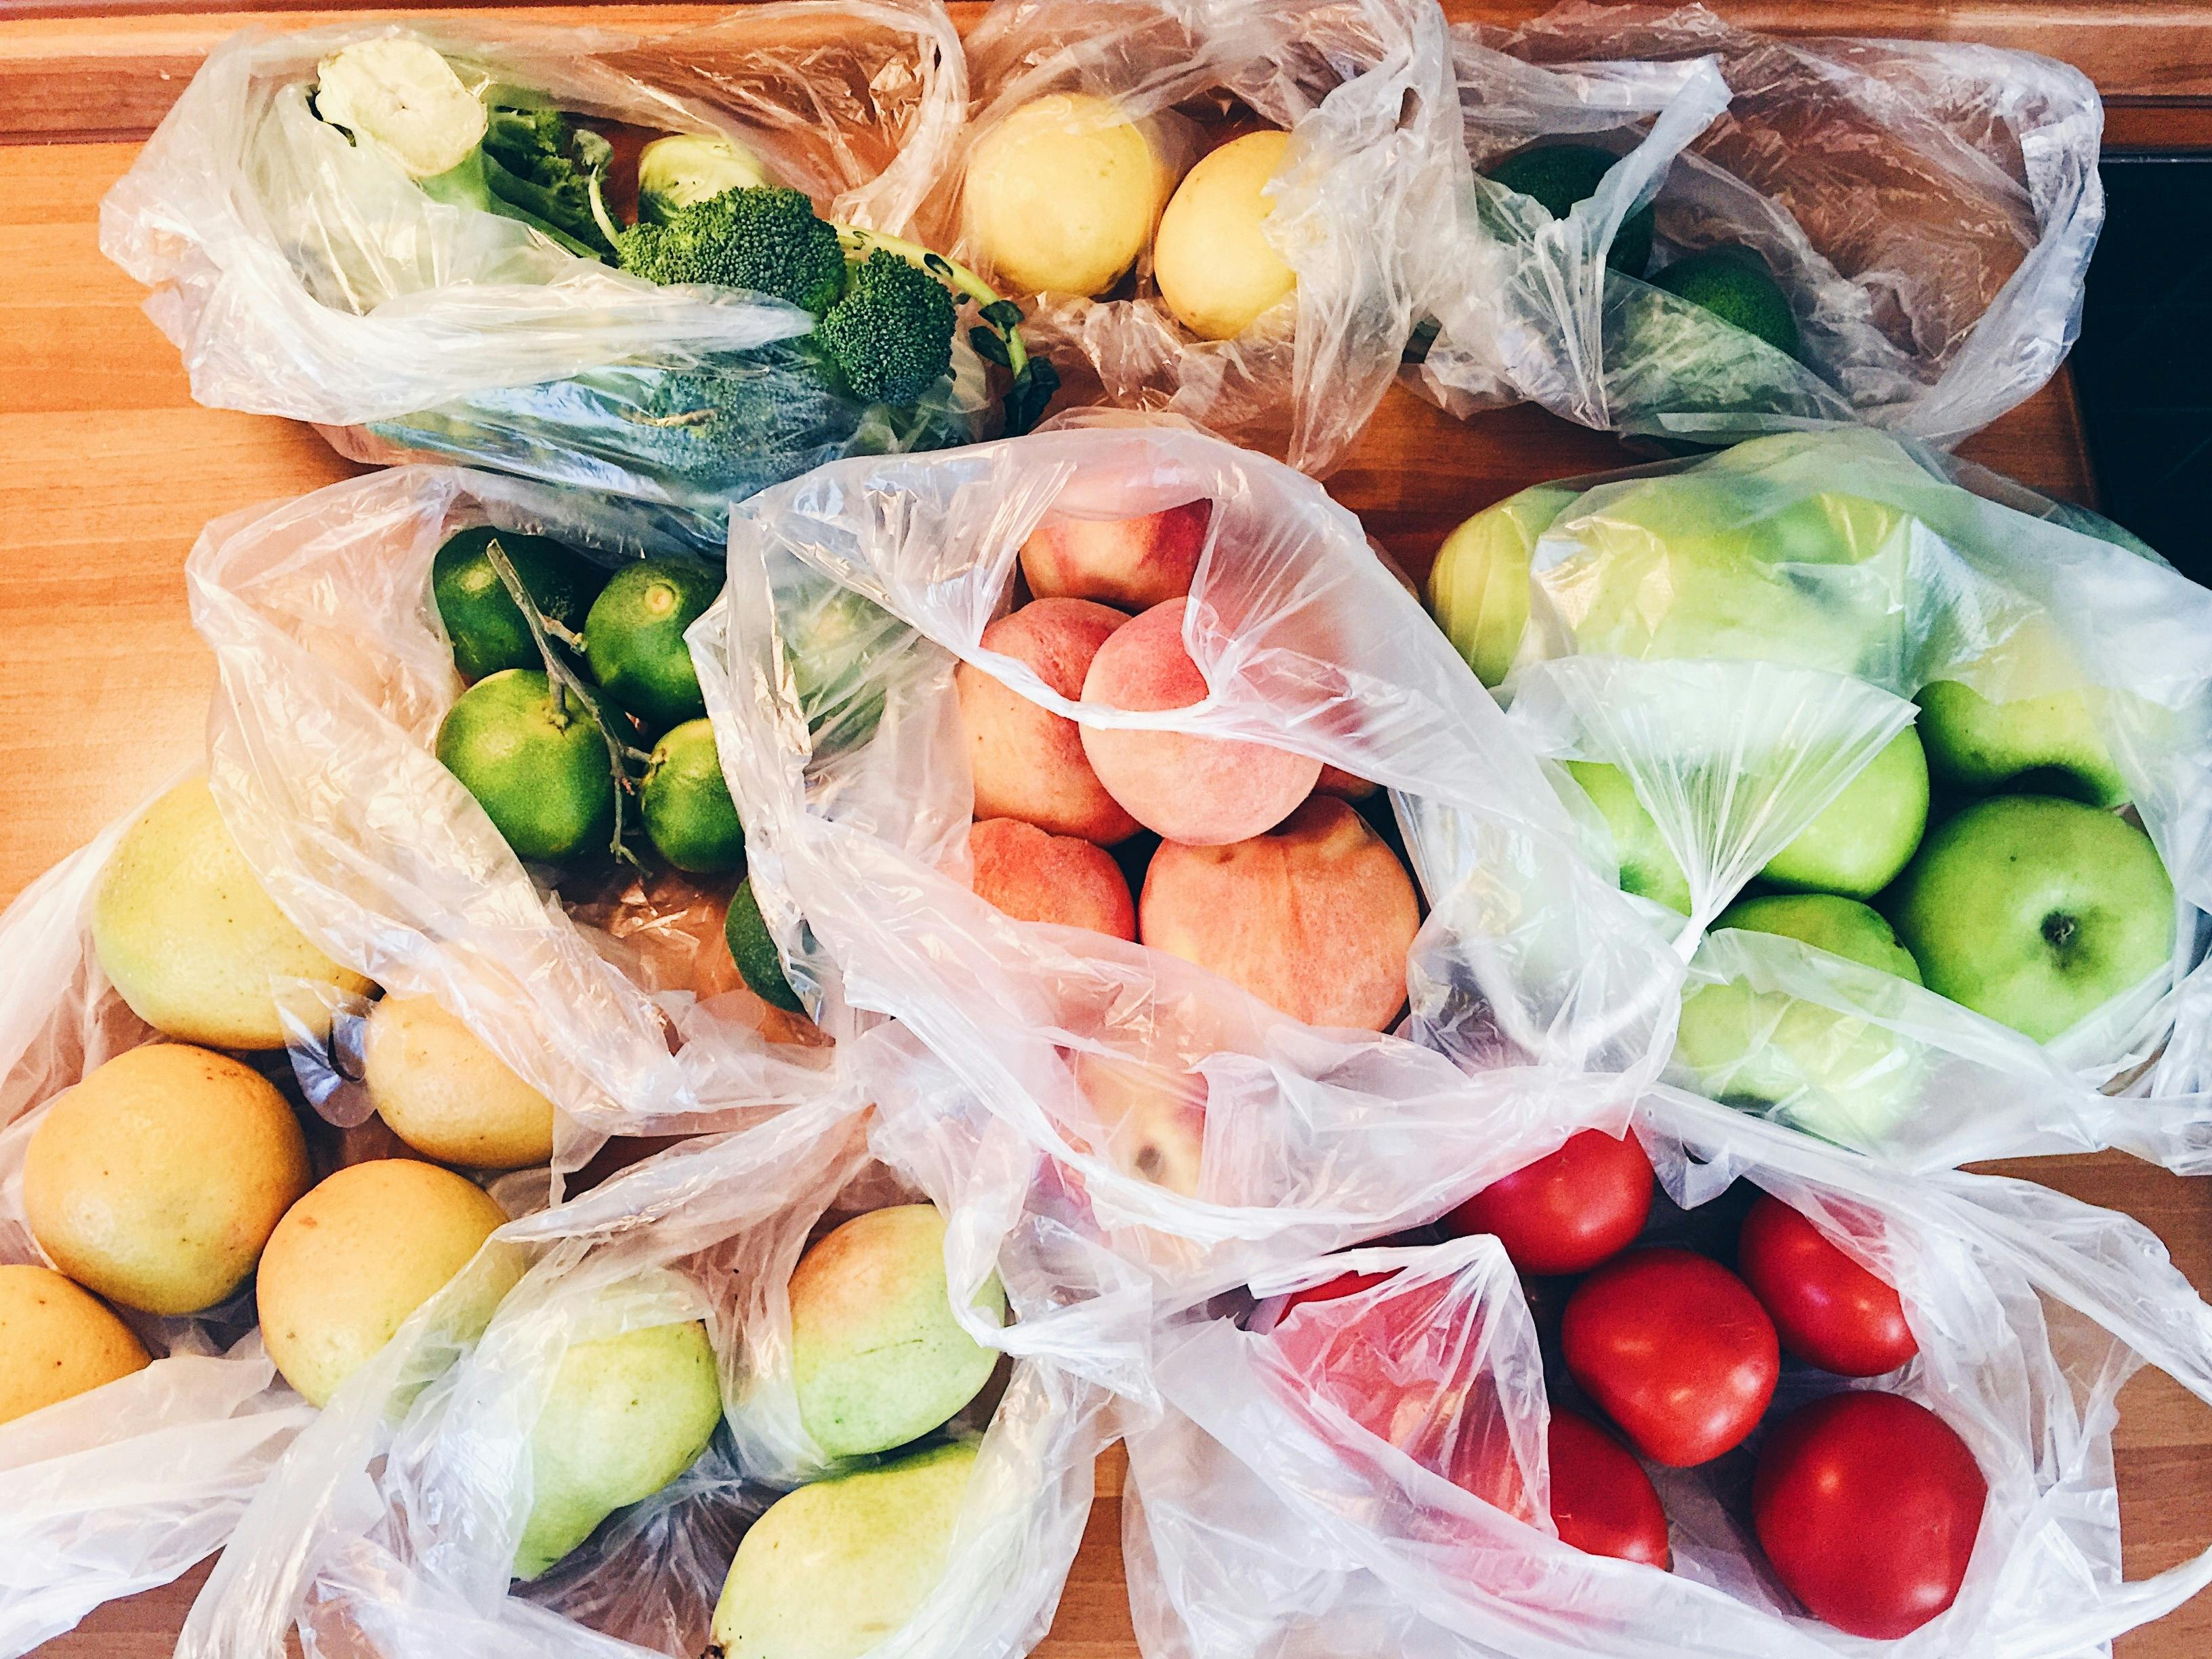 Obst und Gemüse in Plastiktüten verpackt auf einem Tisch.